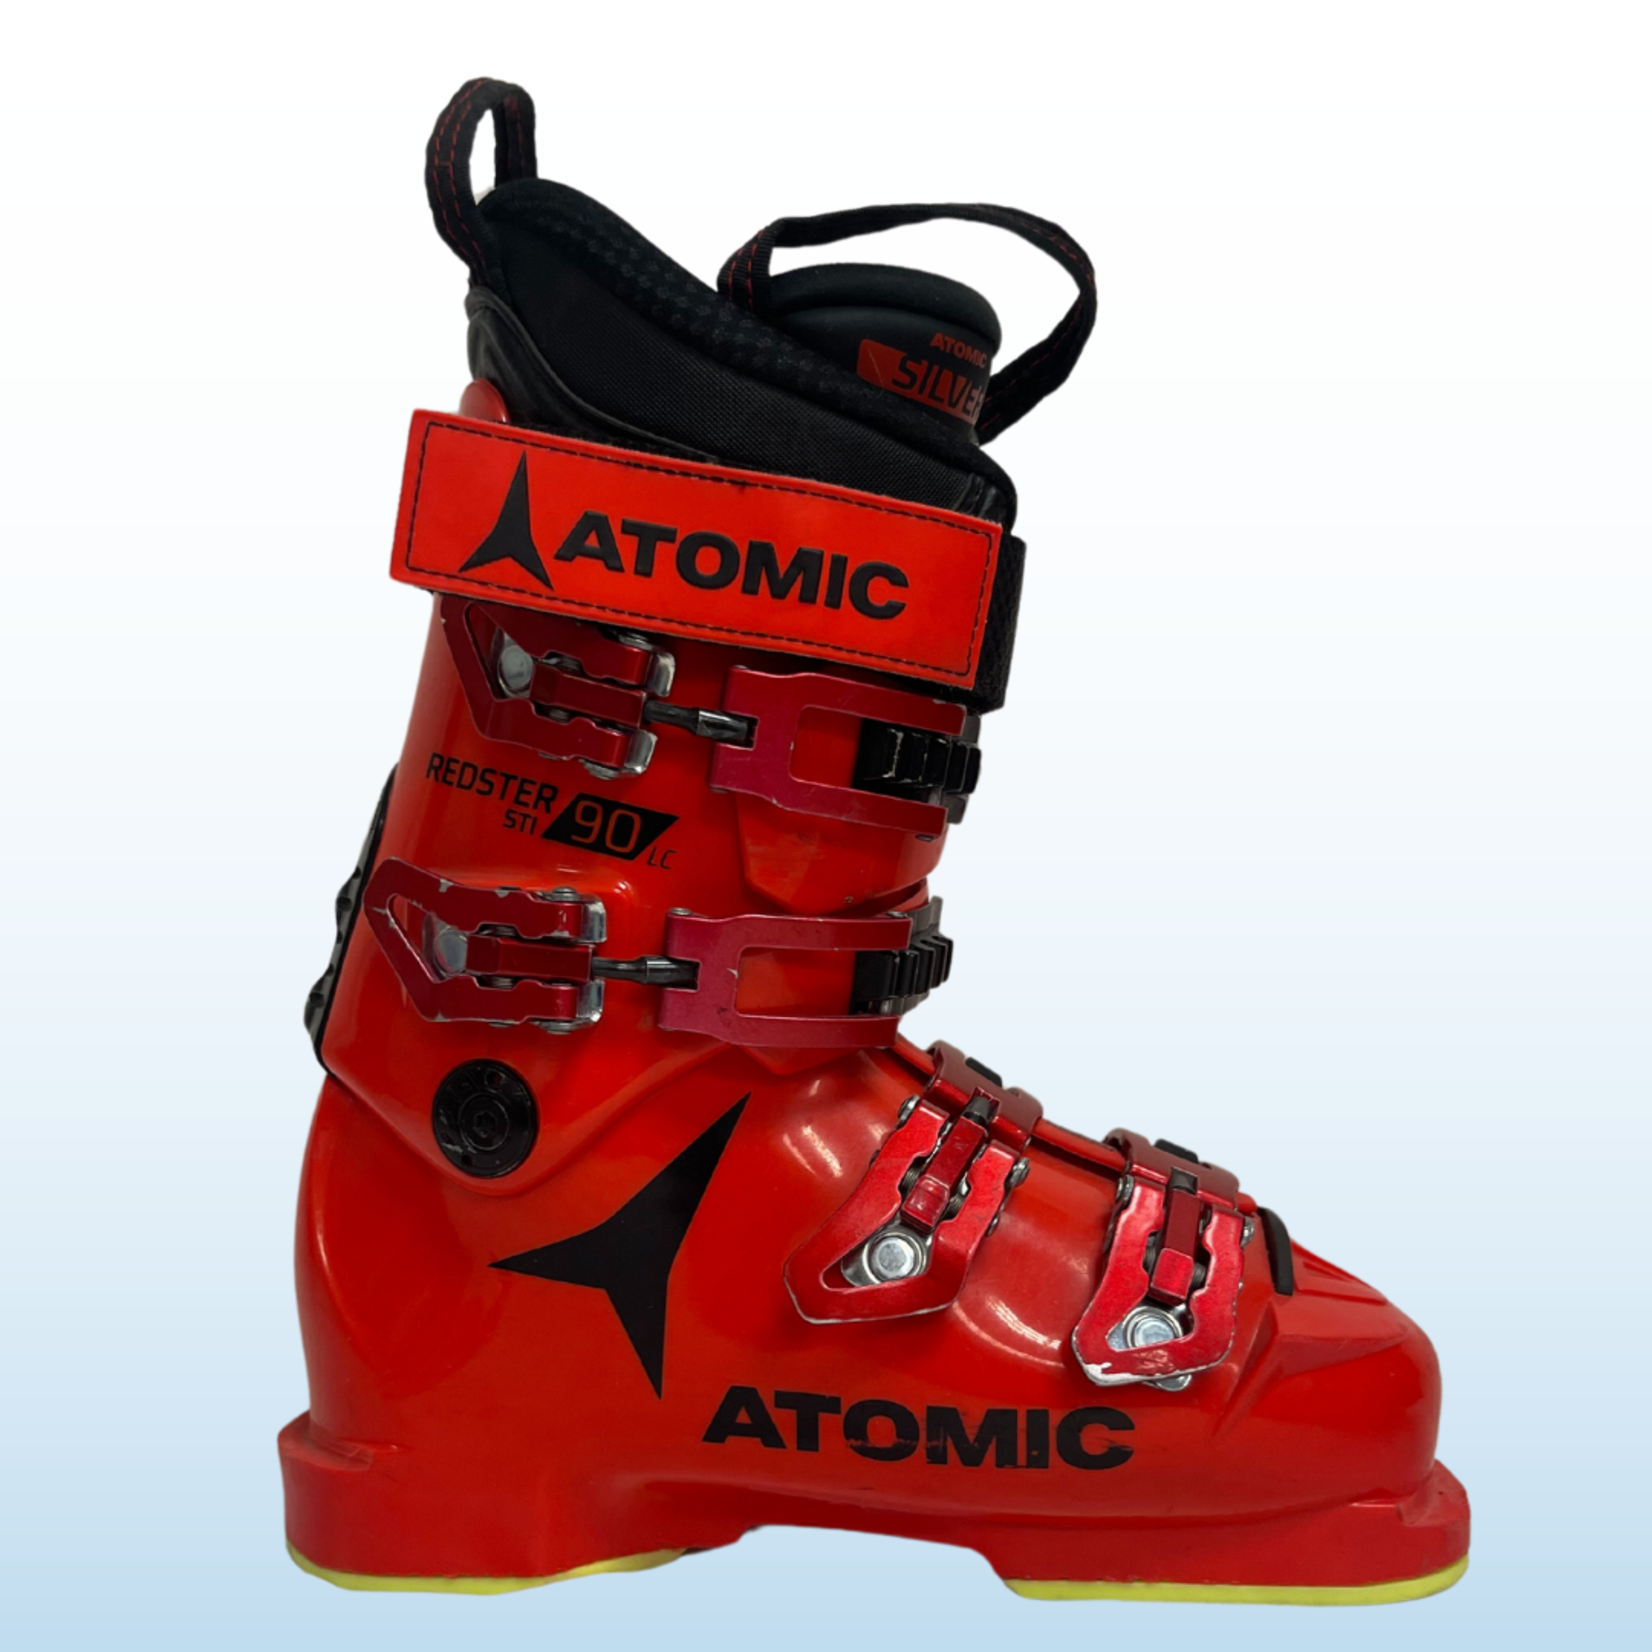 Atomic Atomic Redster Kids Ski Boots, Size 24/24.5